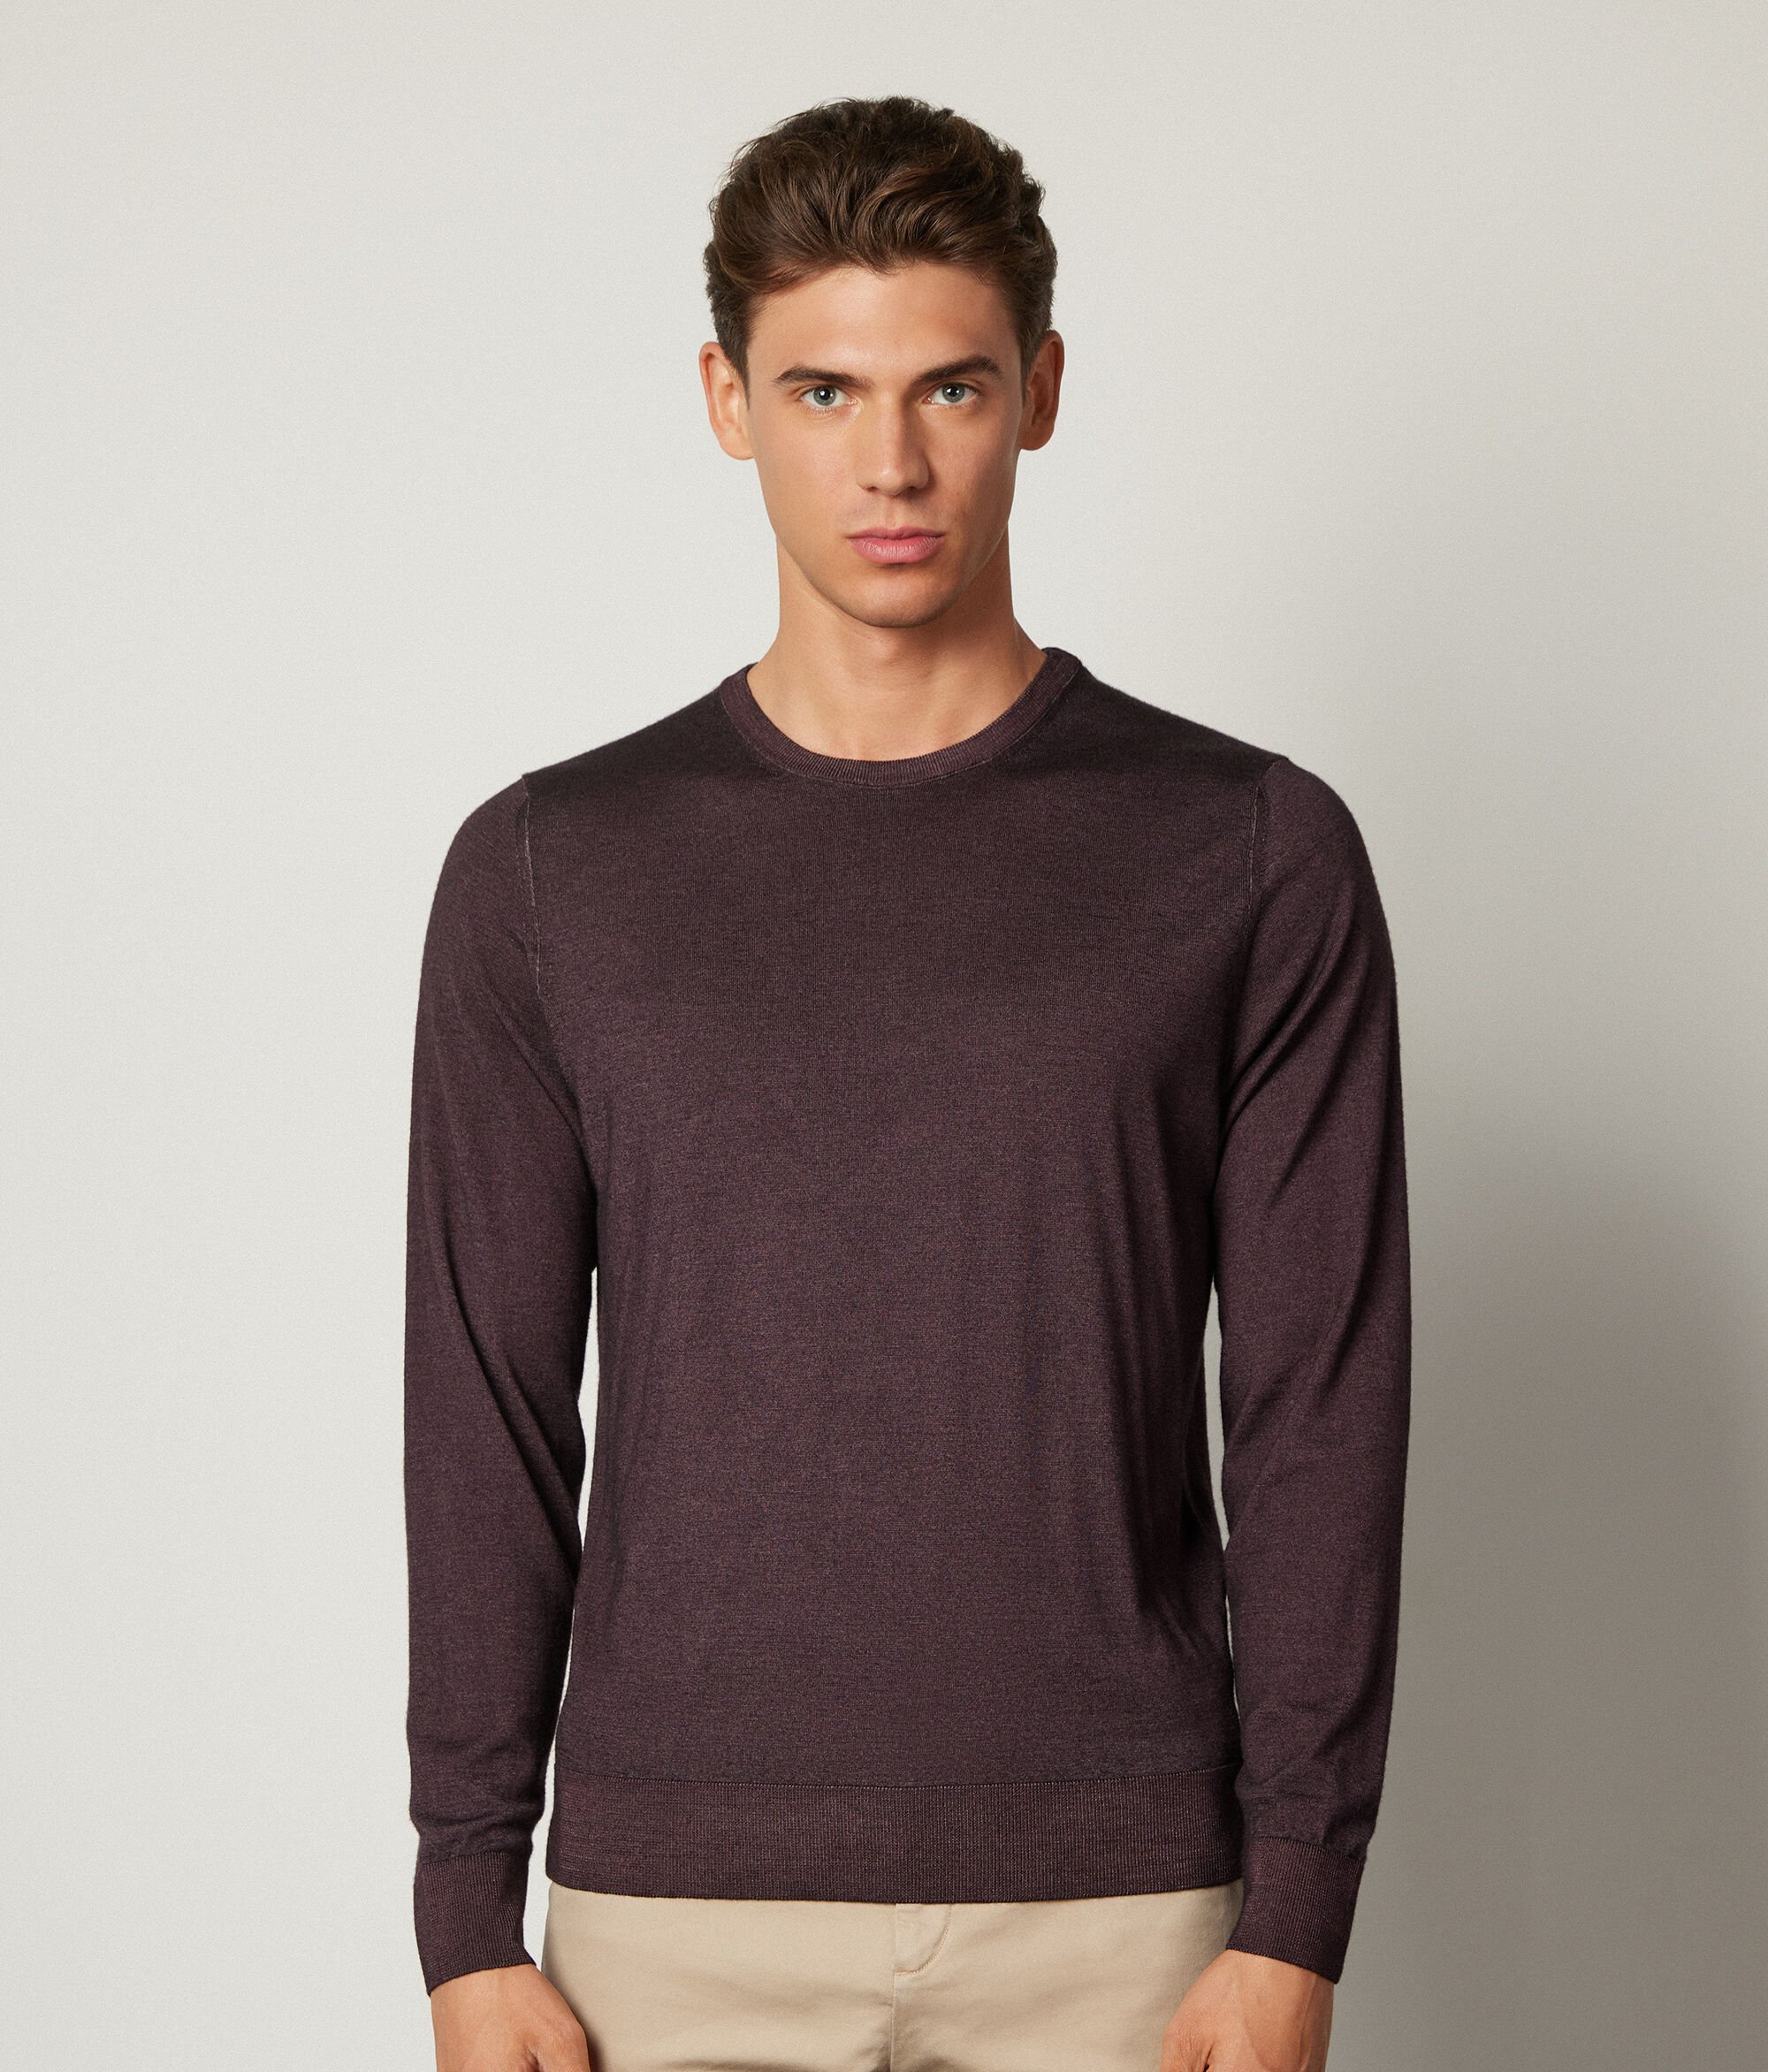 Ultrafine Cashmere Crewneck Sweater